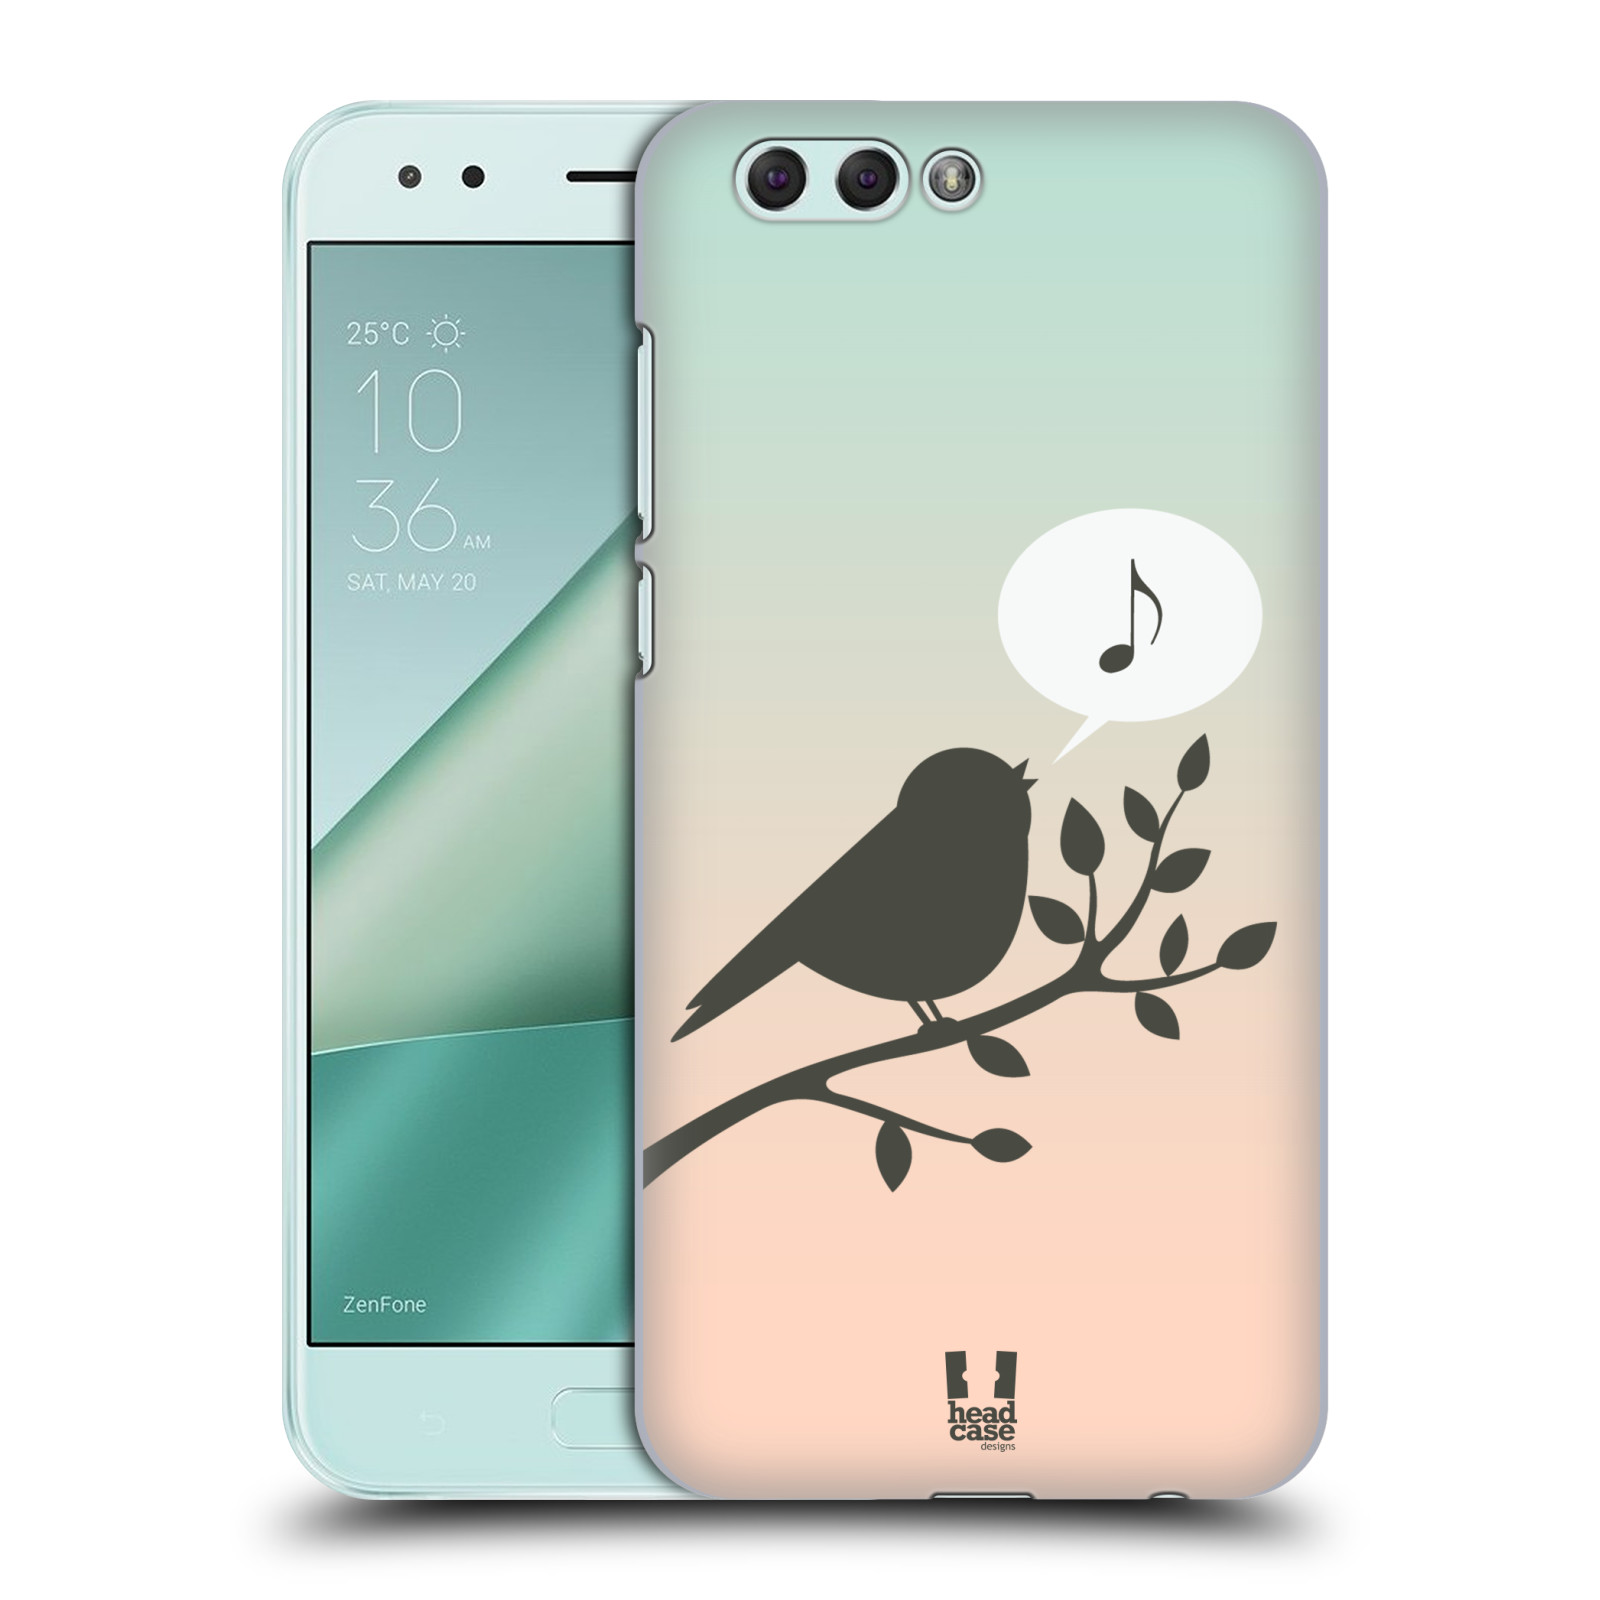 HEAD CASE plastový obal na mobil Asus Zenfone 4 ZE554KL vzor Ptáček zpěváček noty píseň